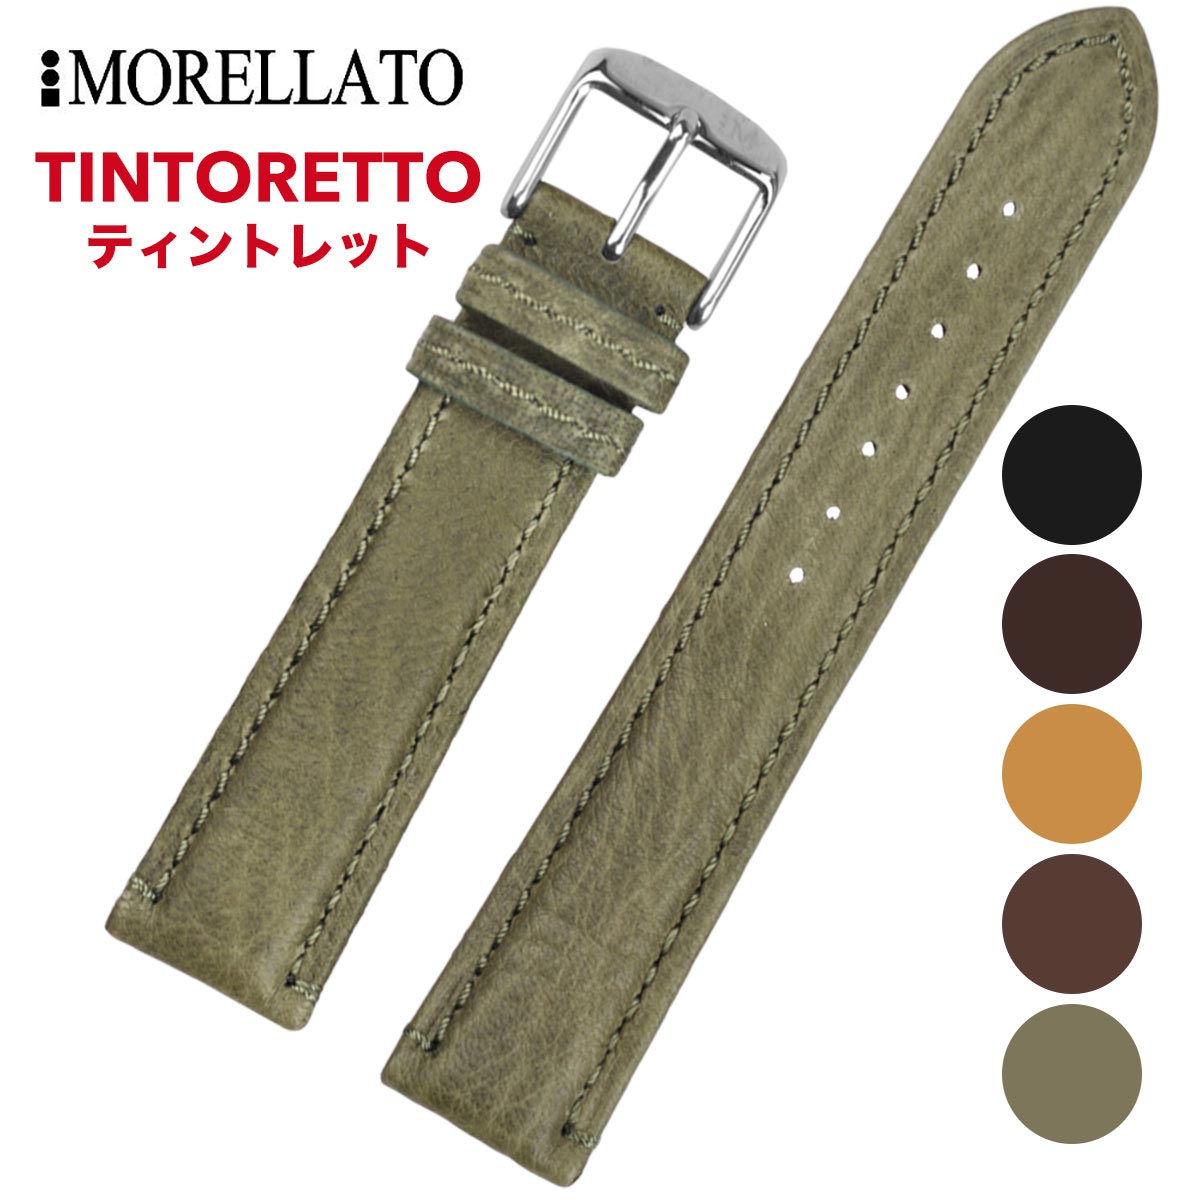 Morellato モレラート [TINTORETTO ティントレット] 腕時計用 レザーベルト 取付幅:18mm/20mm/22mm (尾錠)ピンバックル付き [U3221767]